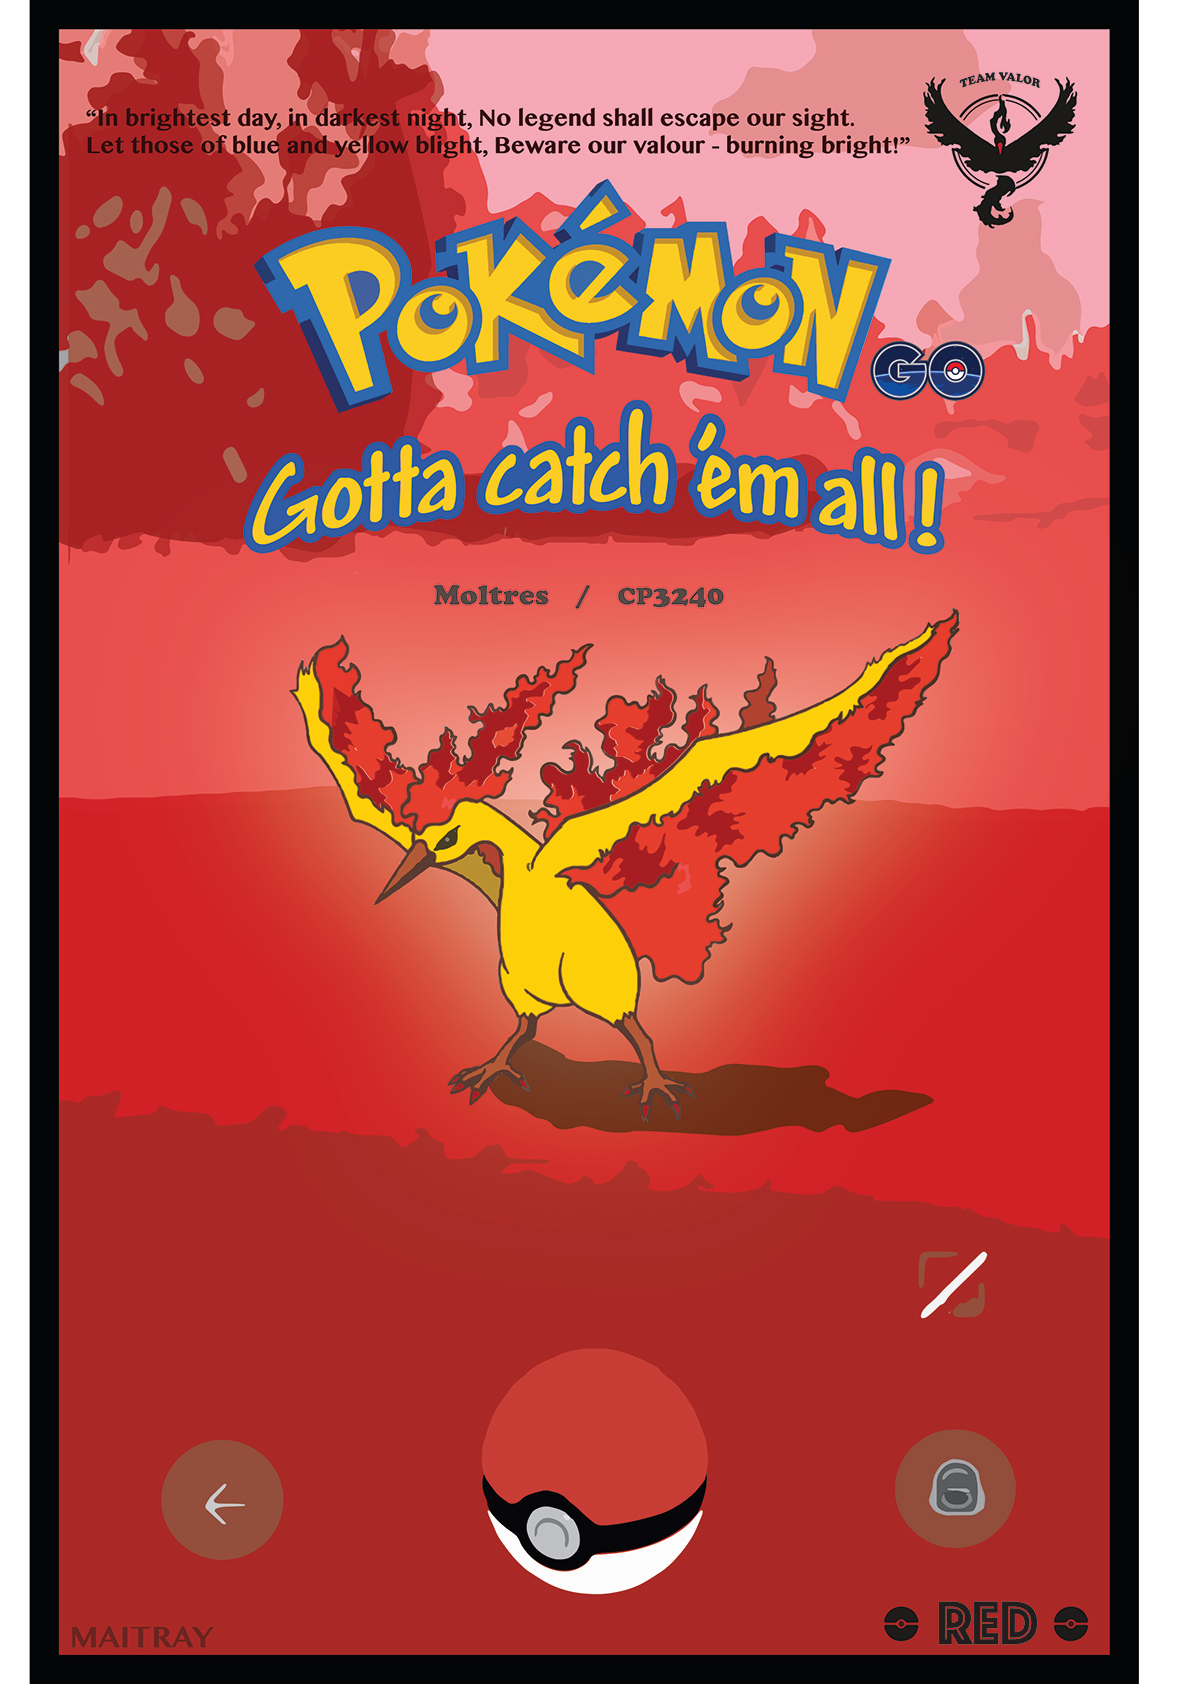 Pokemon pokemon go teamValor Mystic instinct poster ILLUSTRATION  wall art graphic design 